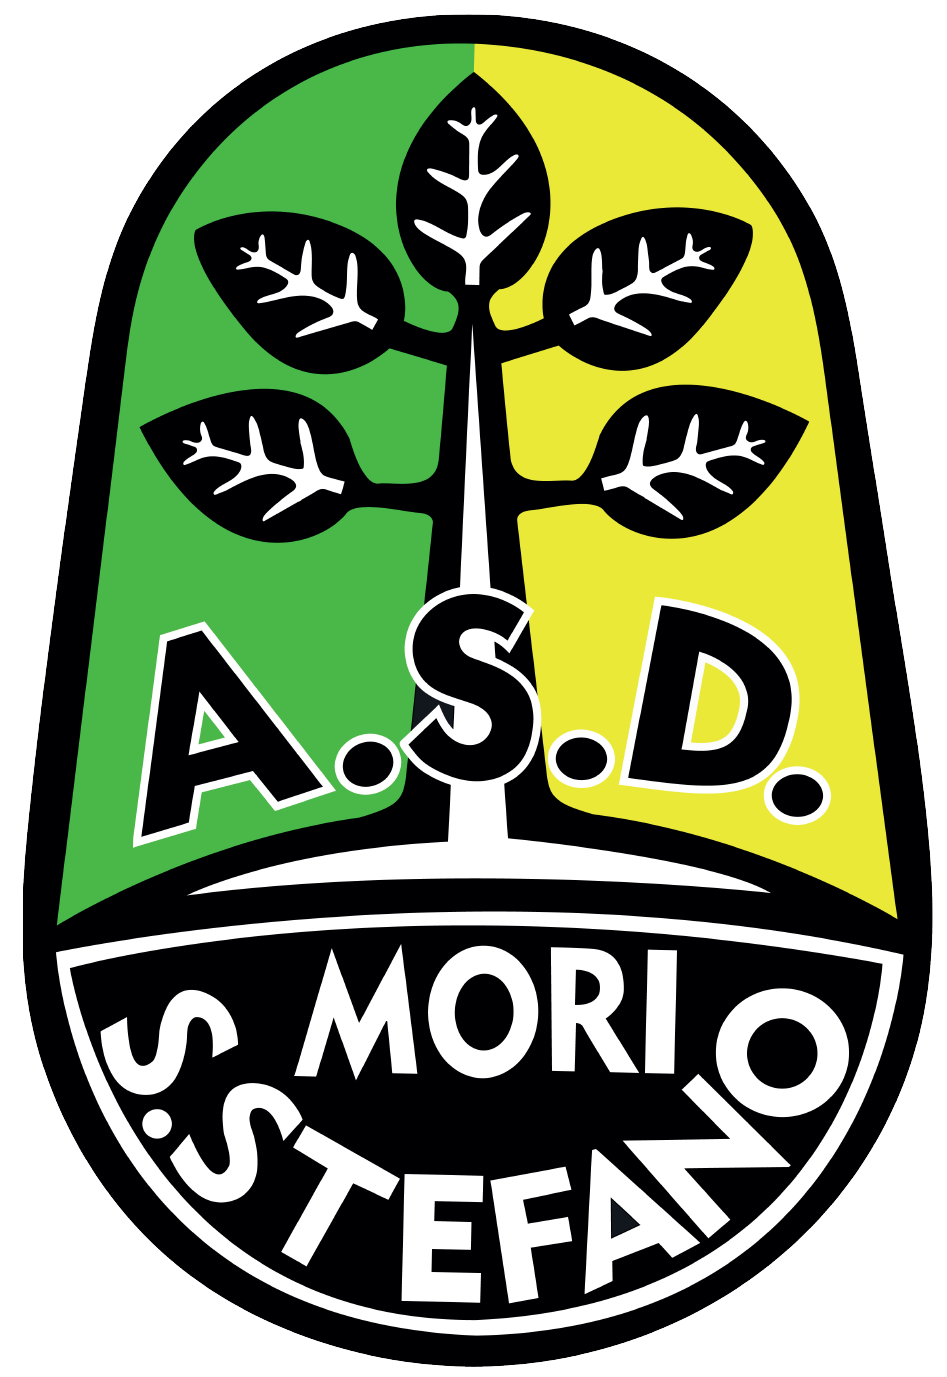 Mori Santo Stefano logo